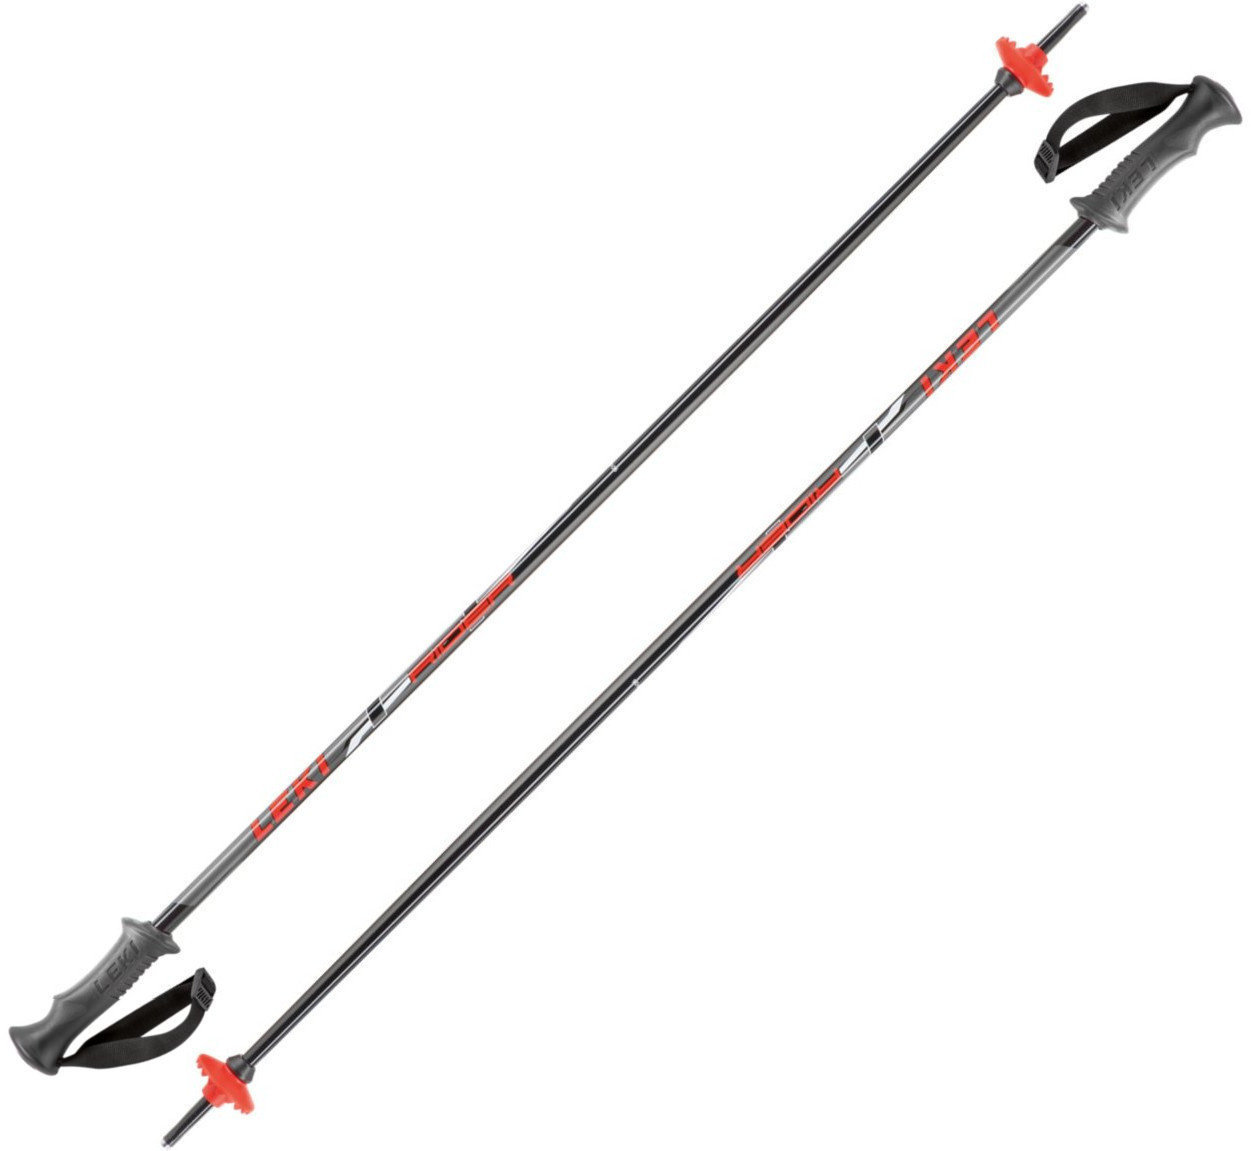 Ski-stokken Leki Rider Black/Red/White/Anthracite 90 cm Ski-stokken